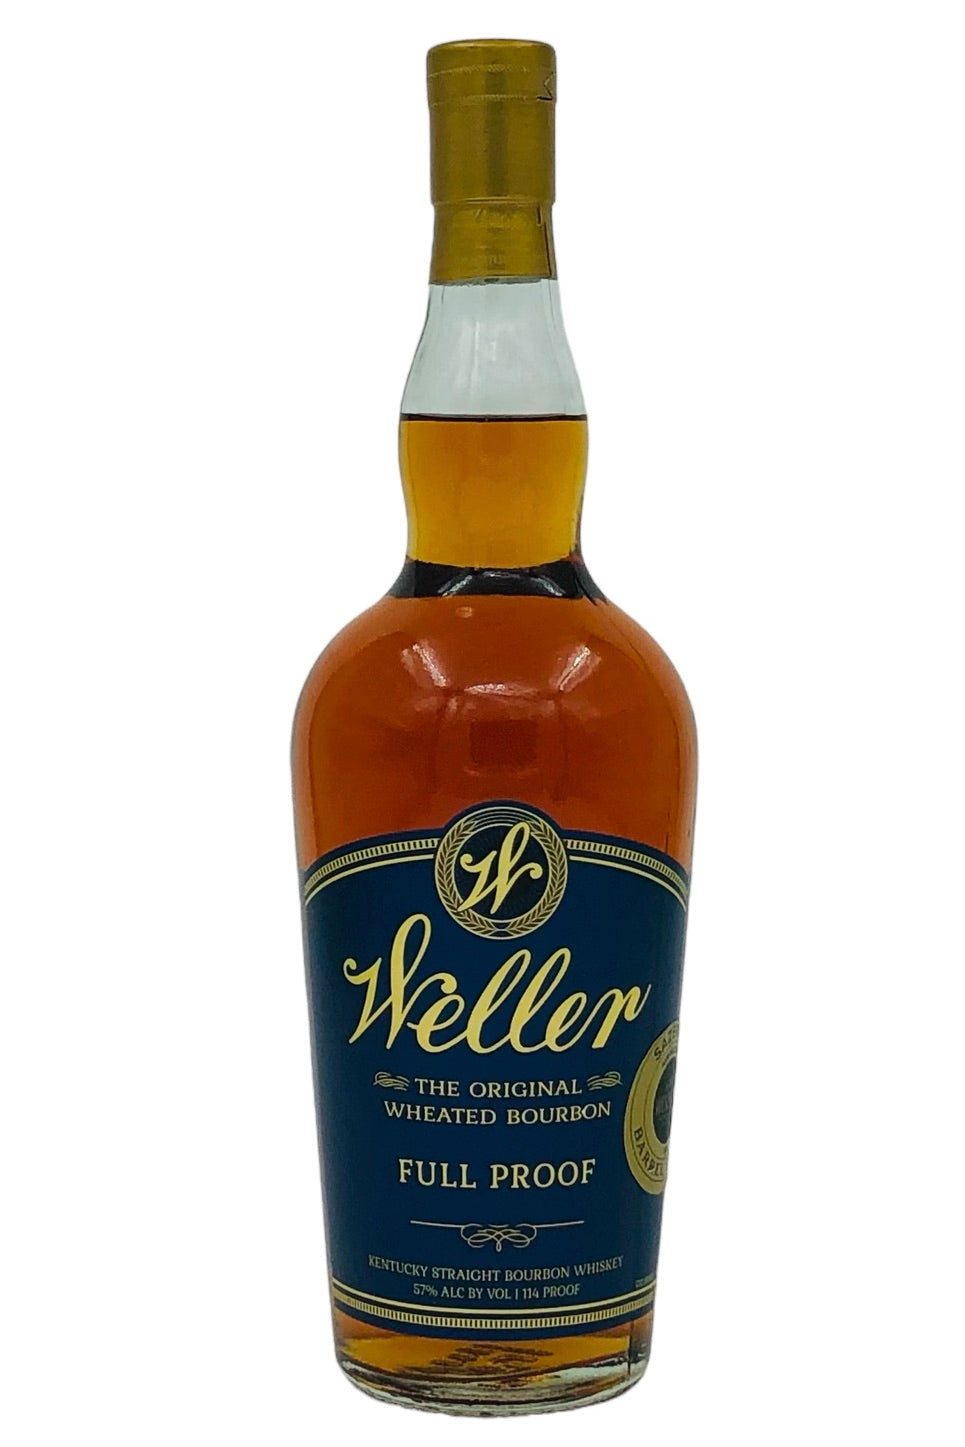 WL Weller Full Proof Single Barrel Bourbon Whiskey